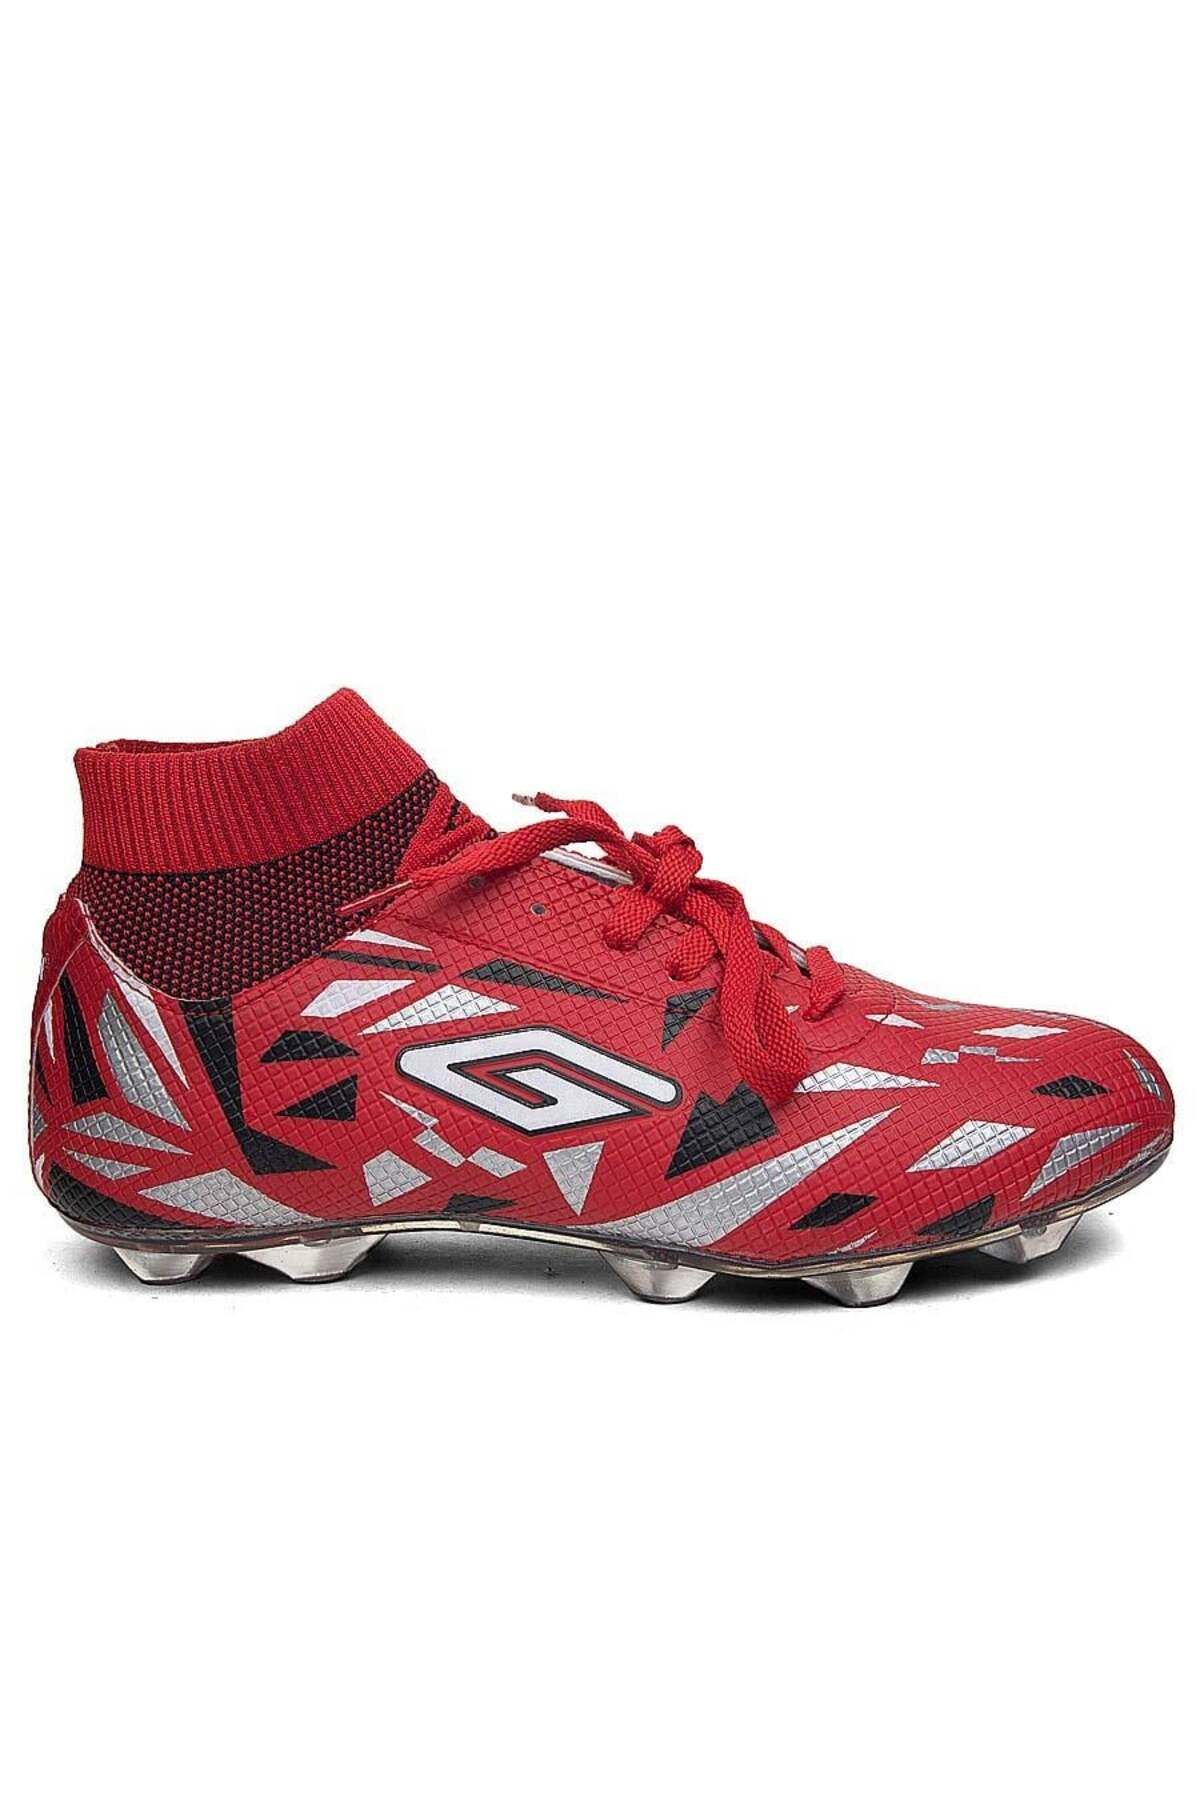 HiraLife Dugana Bilekli Çoraplı Çim Saha Dişli Halısaha Krampon Futbol Ayakkabısı 2303 Kırmızı